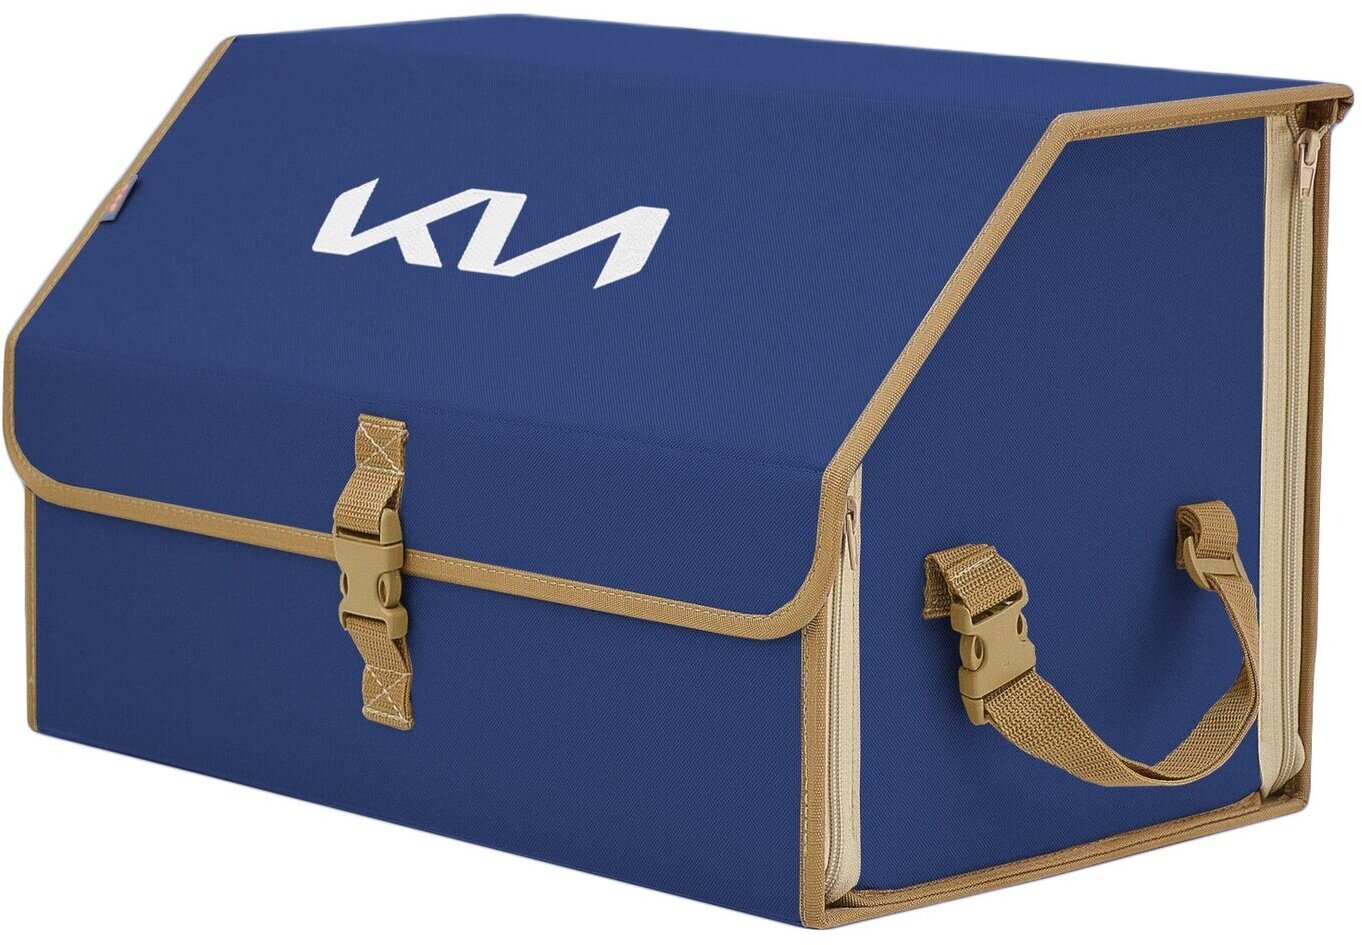 Органайзер-саквояж в багажник "Союз" (размер L). Цвет: синий с бежевой окантовкой и вышивкой KIA (КИА).